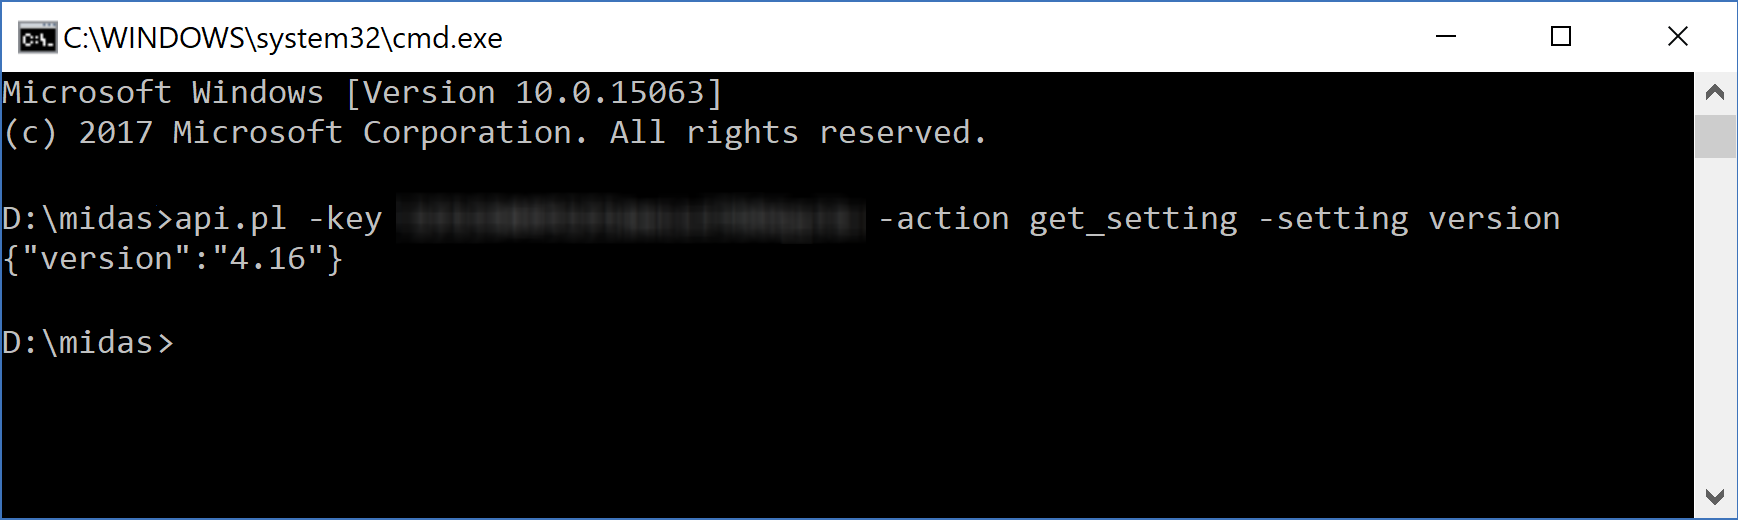 A MIDAS API call made from the Windows Command line (cmd)